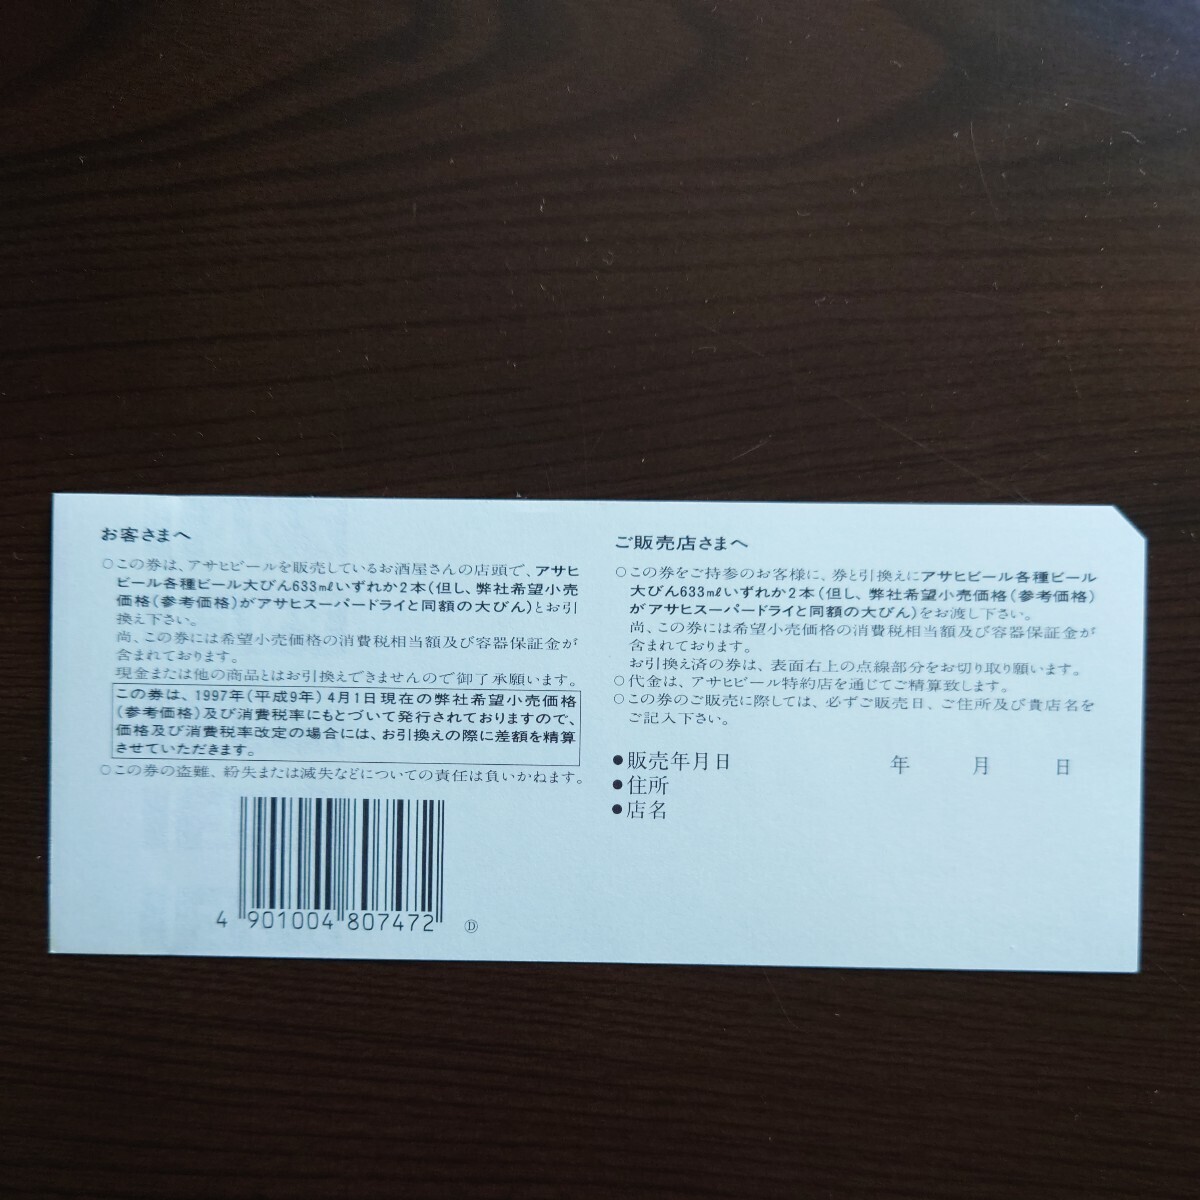  Asahi пиво подарочный сертификат большой бутылка 2 шт ×10 листов (20 минут )[ бесплатная доставка ]